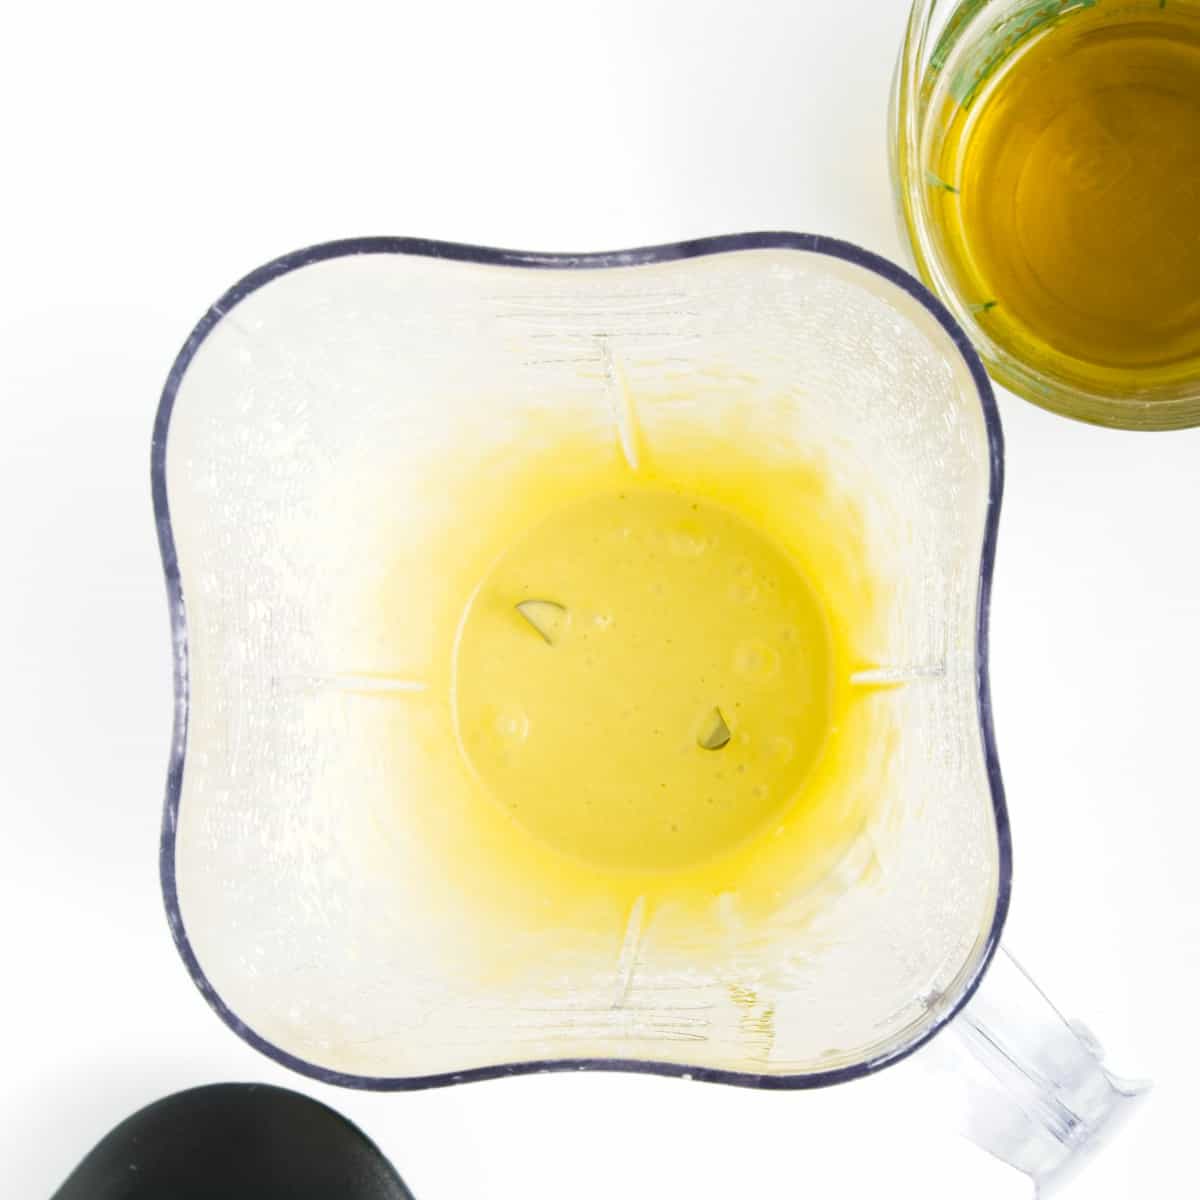 Olive oil, vegetable oil and dijon in blender.